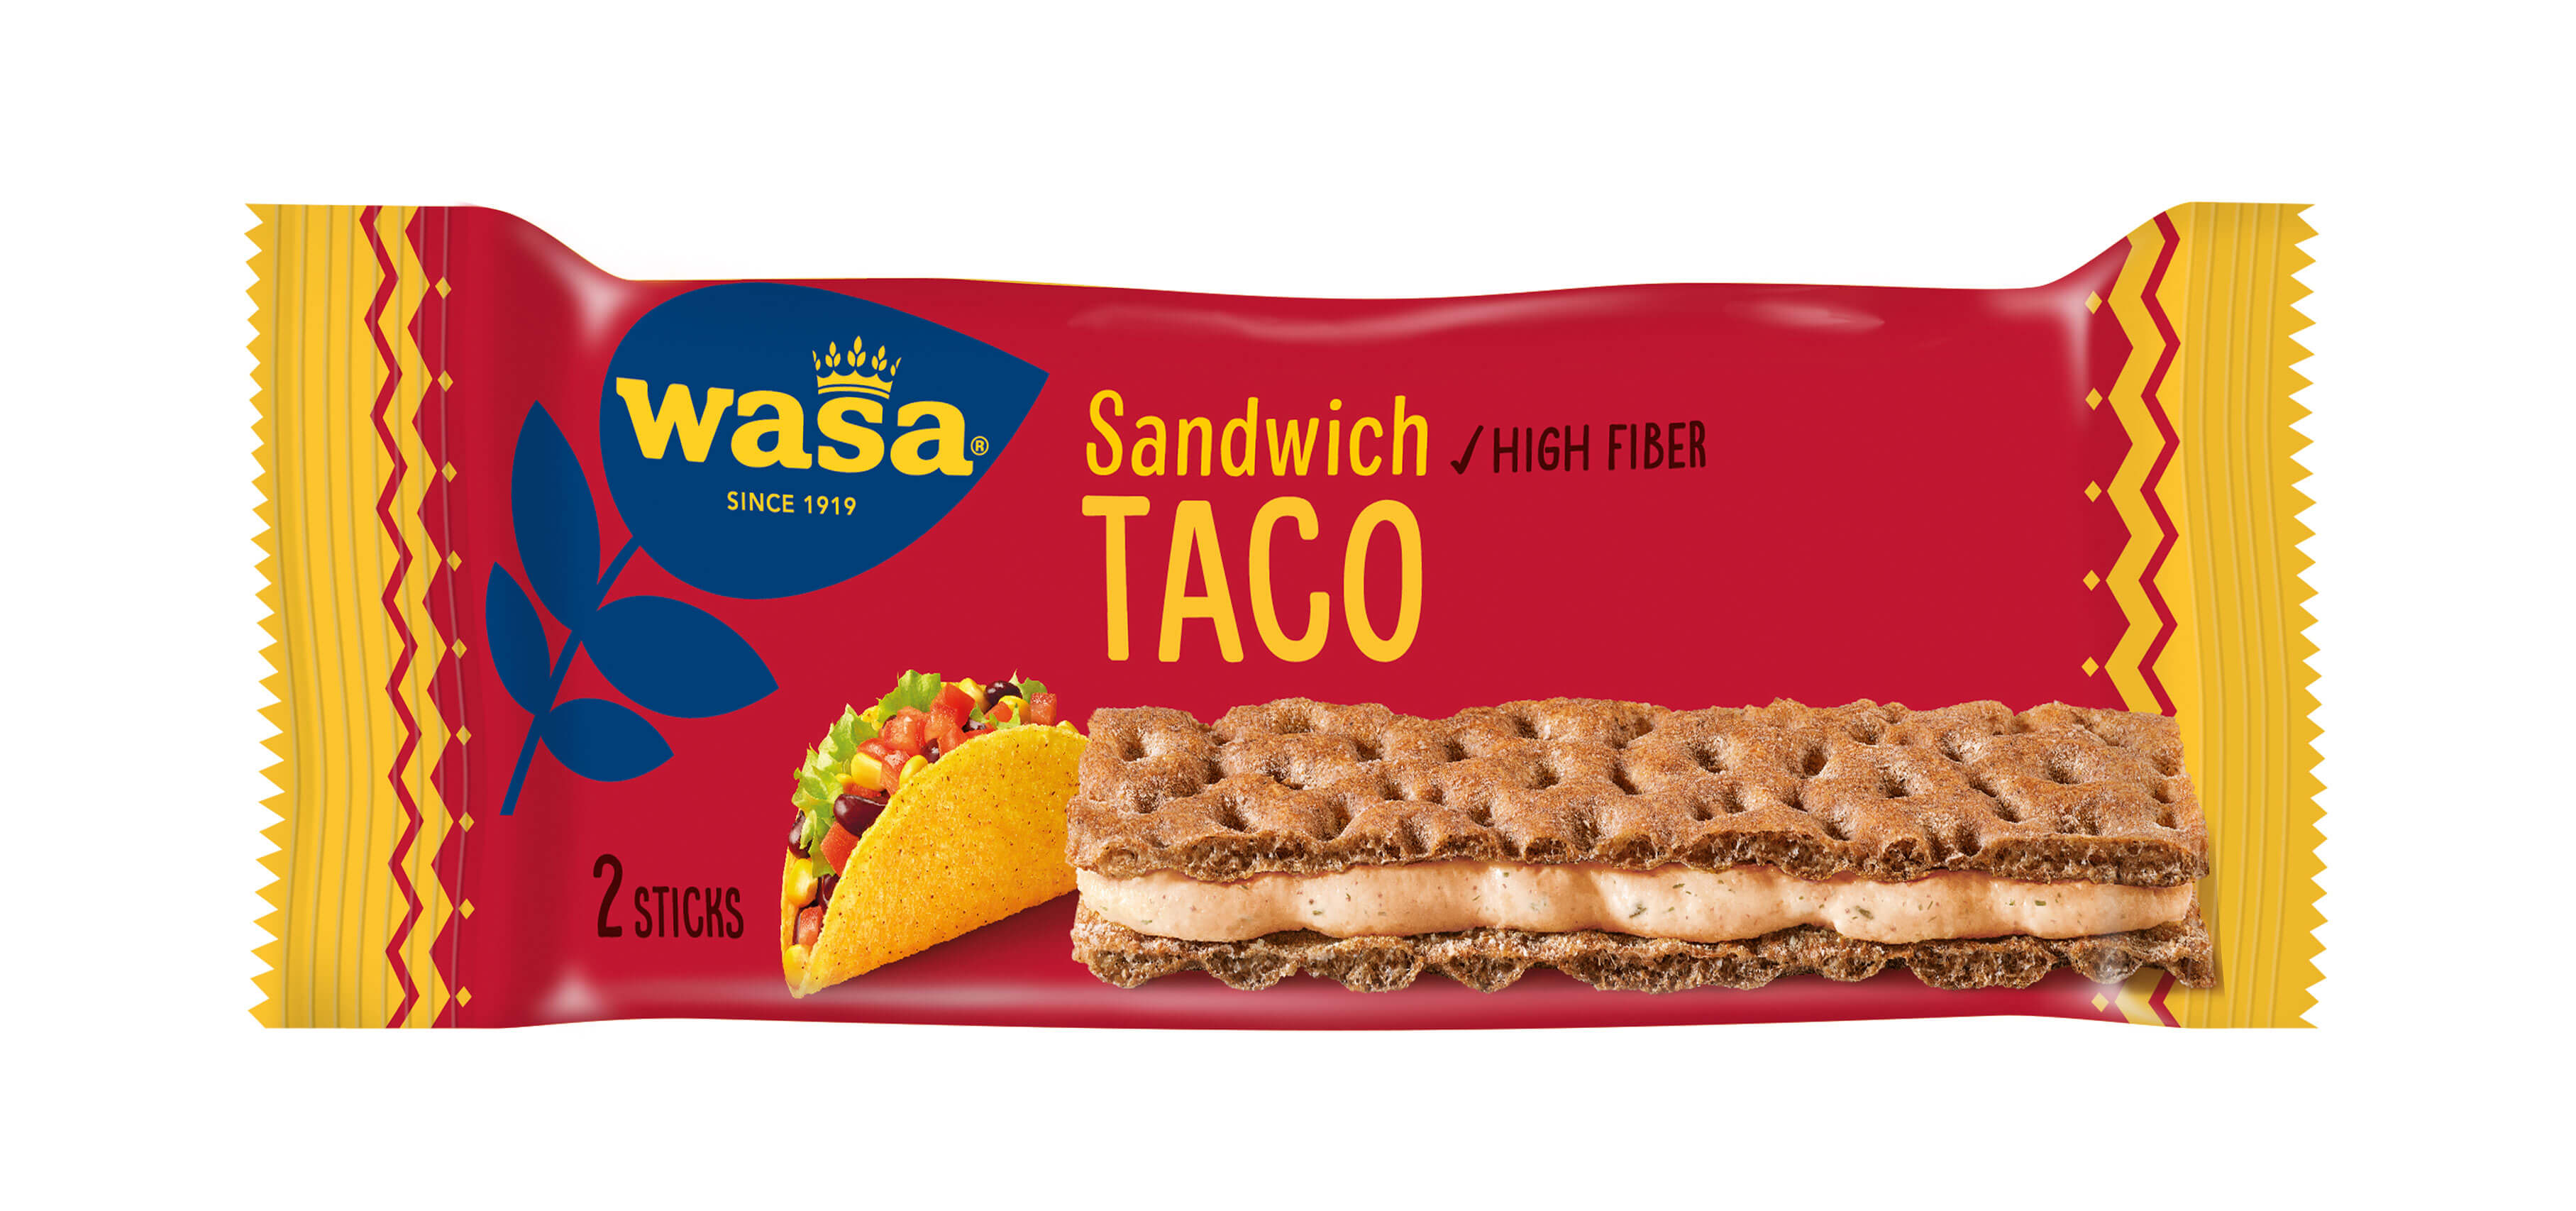 Wasa Sandwich Taco - Upptäck det perfekta mellanmålet, gott knäckebröd med krämig ostfyllning. Utmärkt som ett lätt mellanmål på språng  och som snabba mellanmål efter skolan eller innan träning.